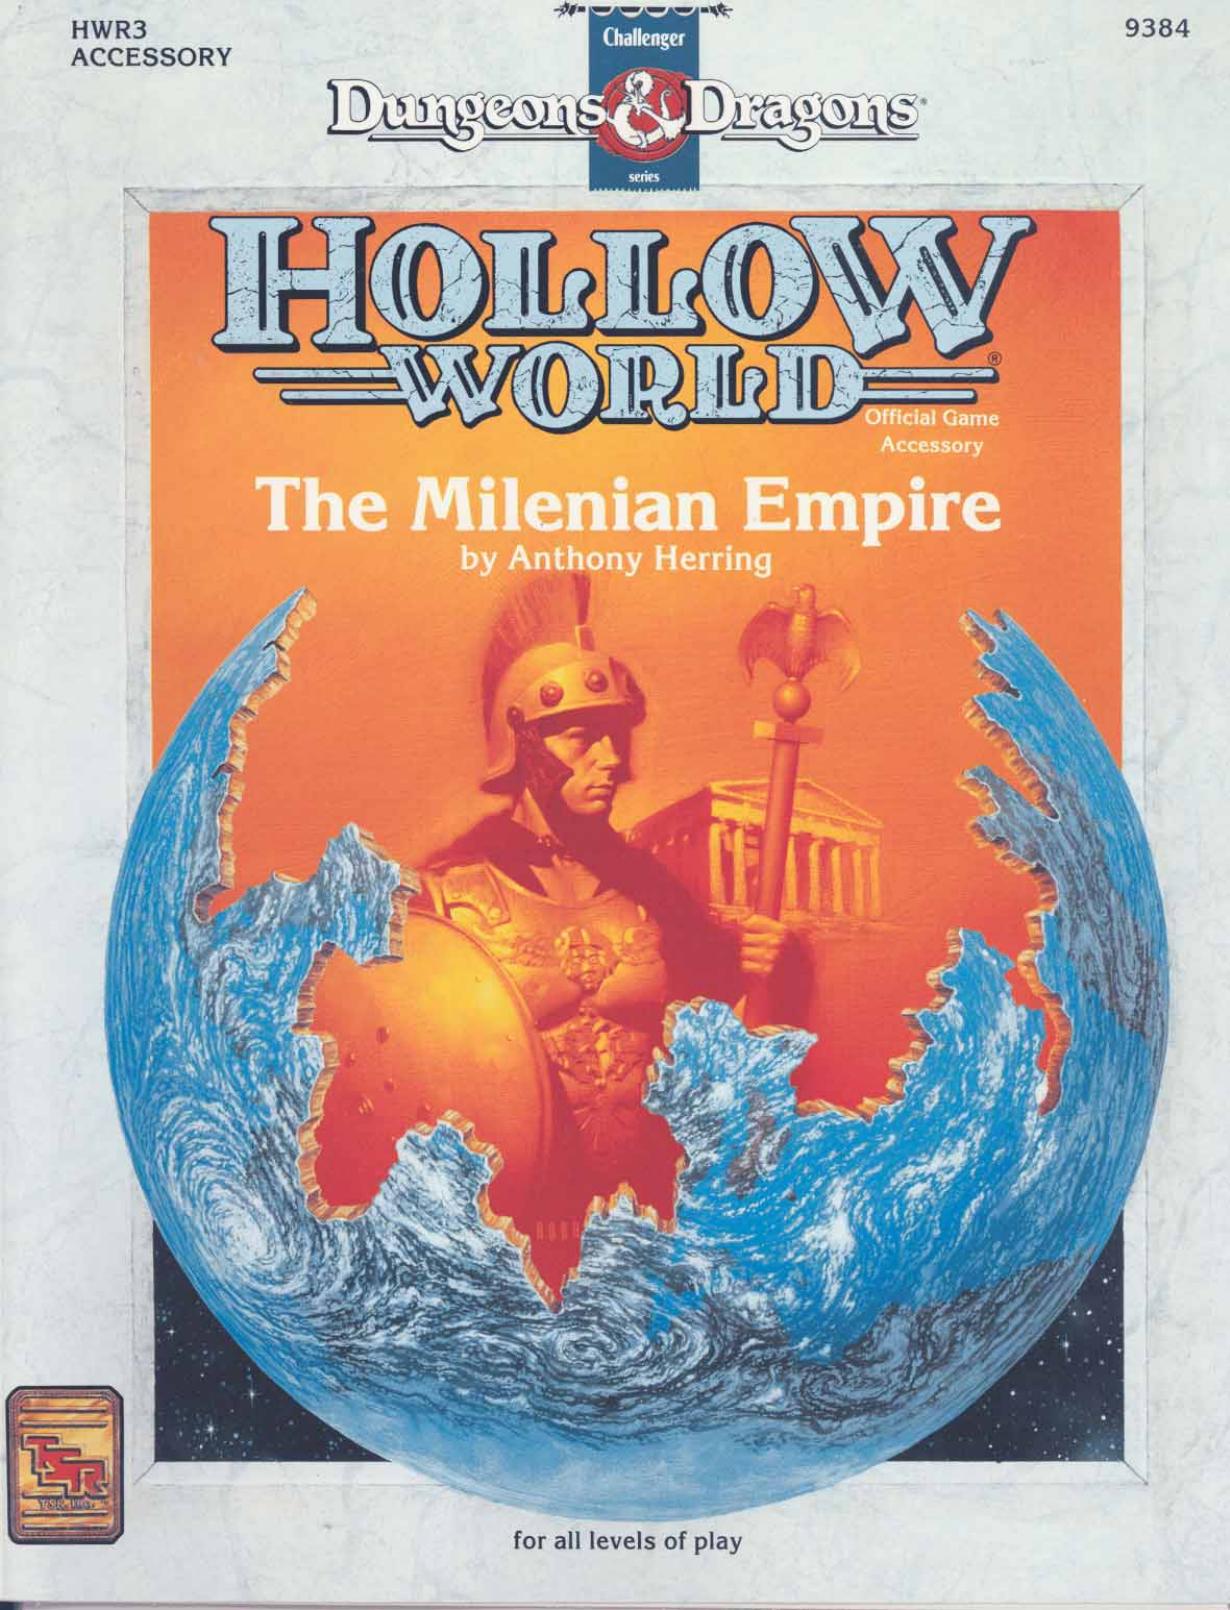 The Milenian Empire